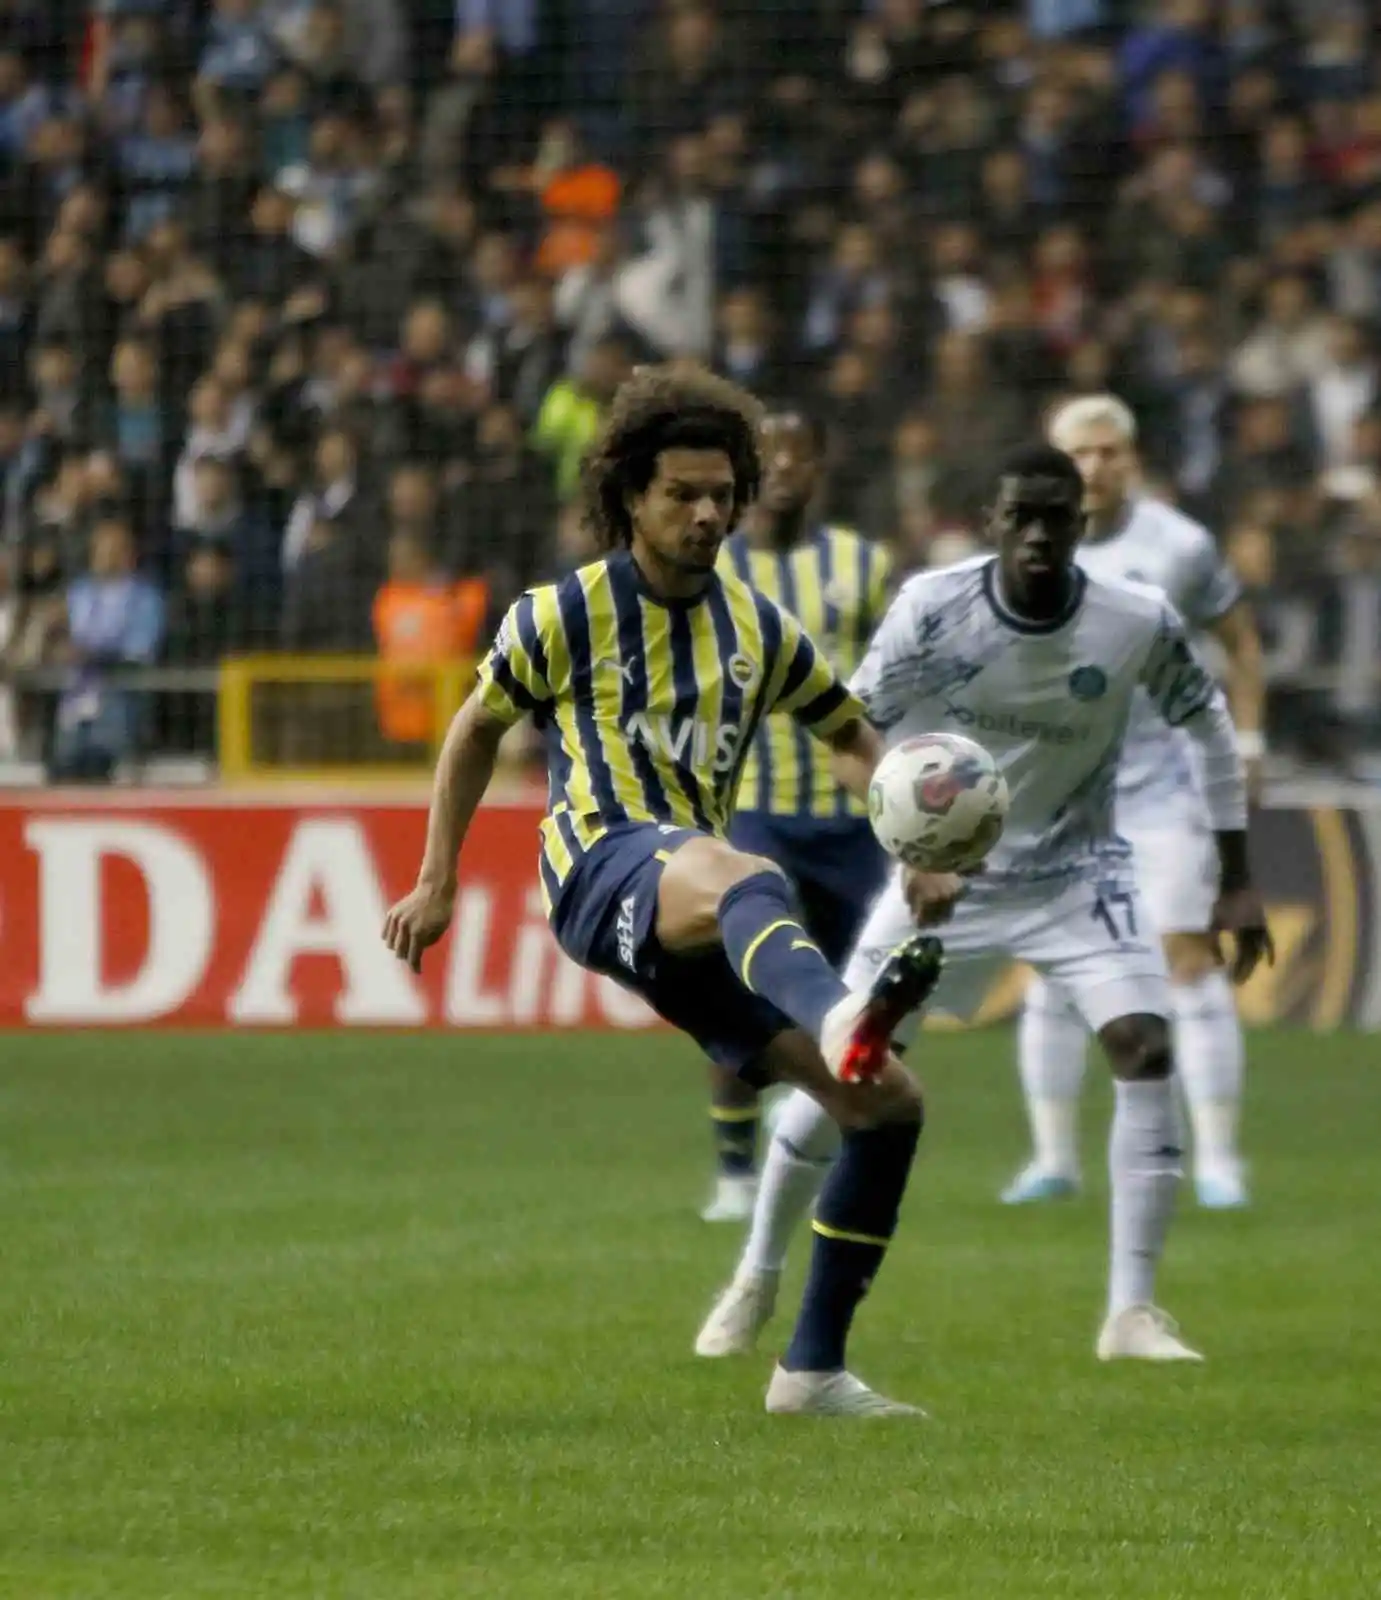 Spor Toto Süper Lig: Adana Demirspor: 0 - Fenerbahçe: 0 (Maç devam ediyor)
